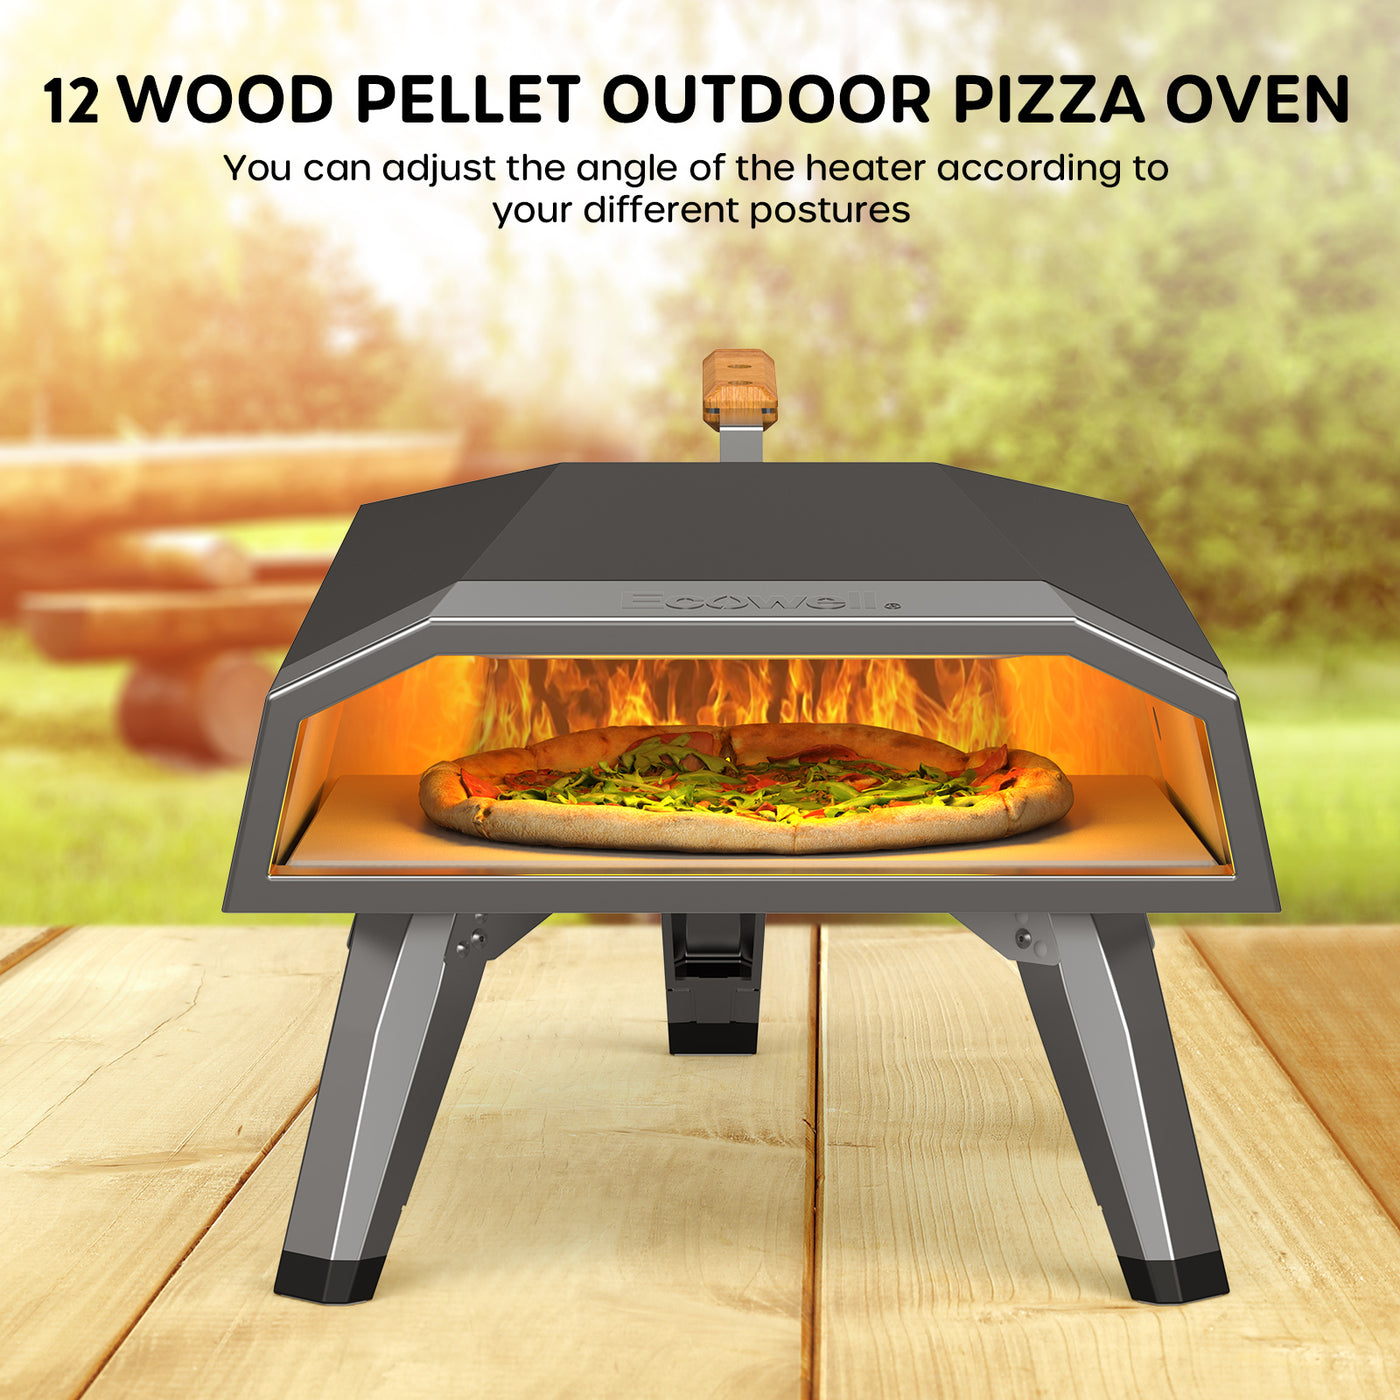 ECOWELL 12” Wood Pellet Outdoor Pizza Oven